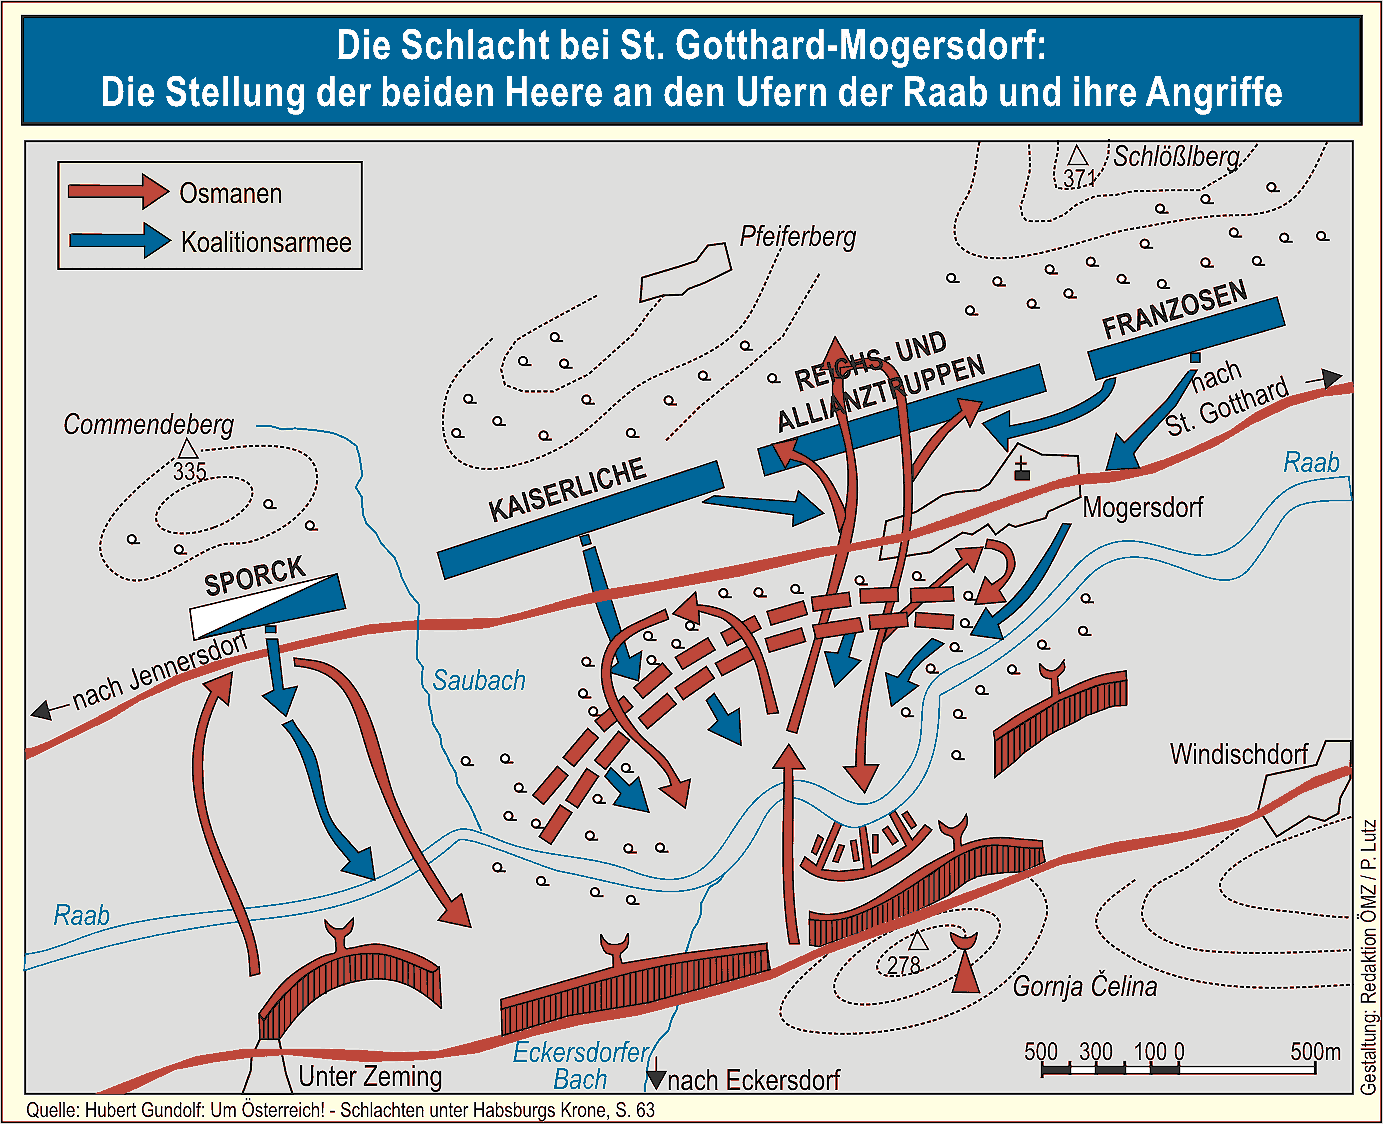 Die Schlacht bei St. Gotthard-Mogersdorf.
(Zum Vergrößern anklicken !)